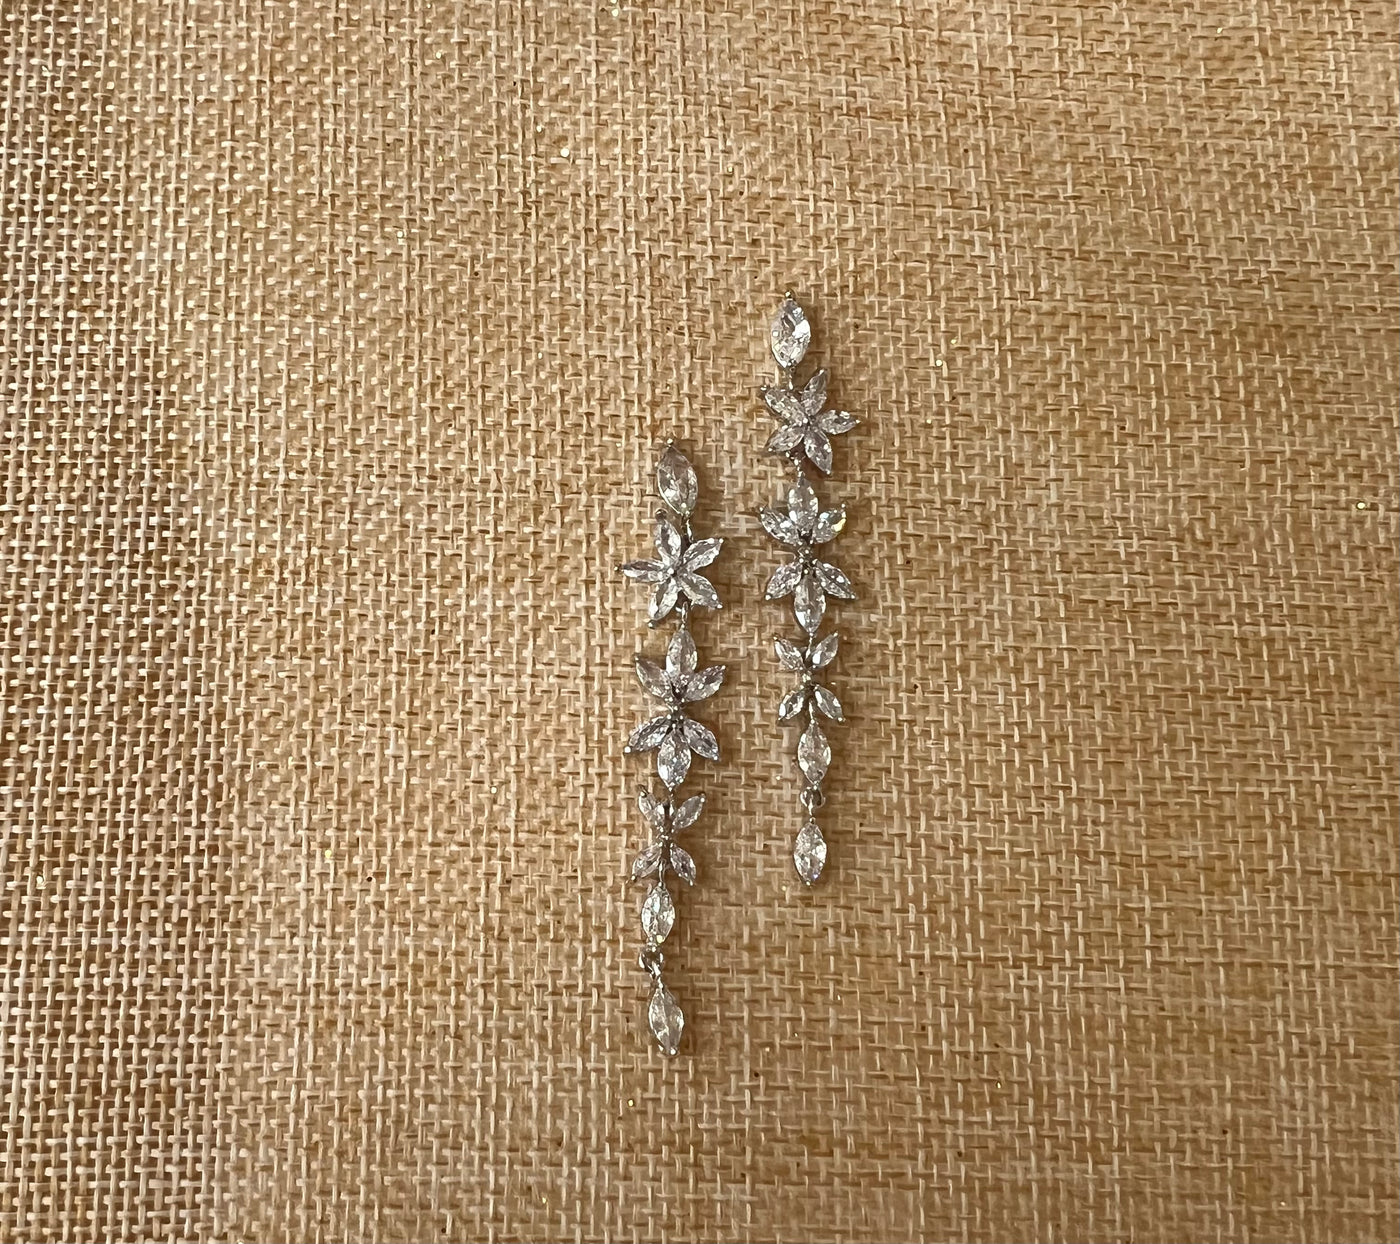 Bridal Earrings, Long Dangle Zirconia Wedding Earring, 15 Anos Earring